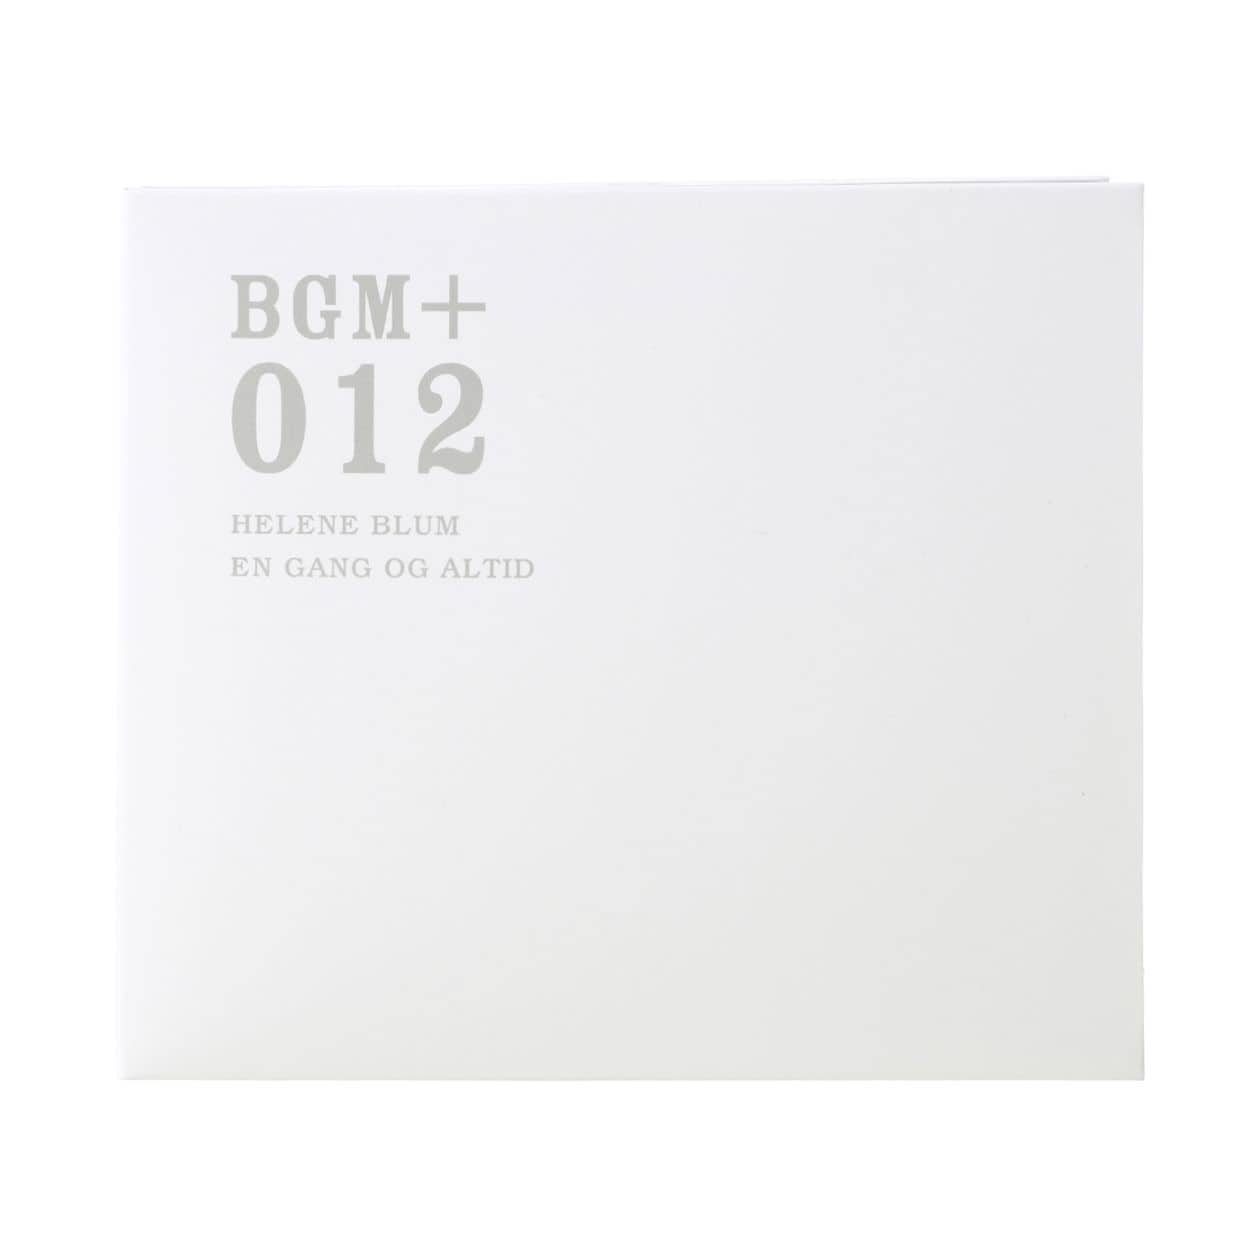 무인양품 일본 CD 음악 BGM +012 HELENE BLUM